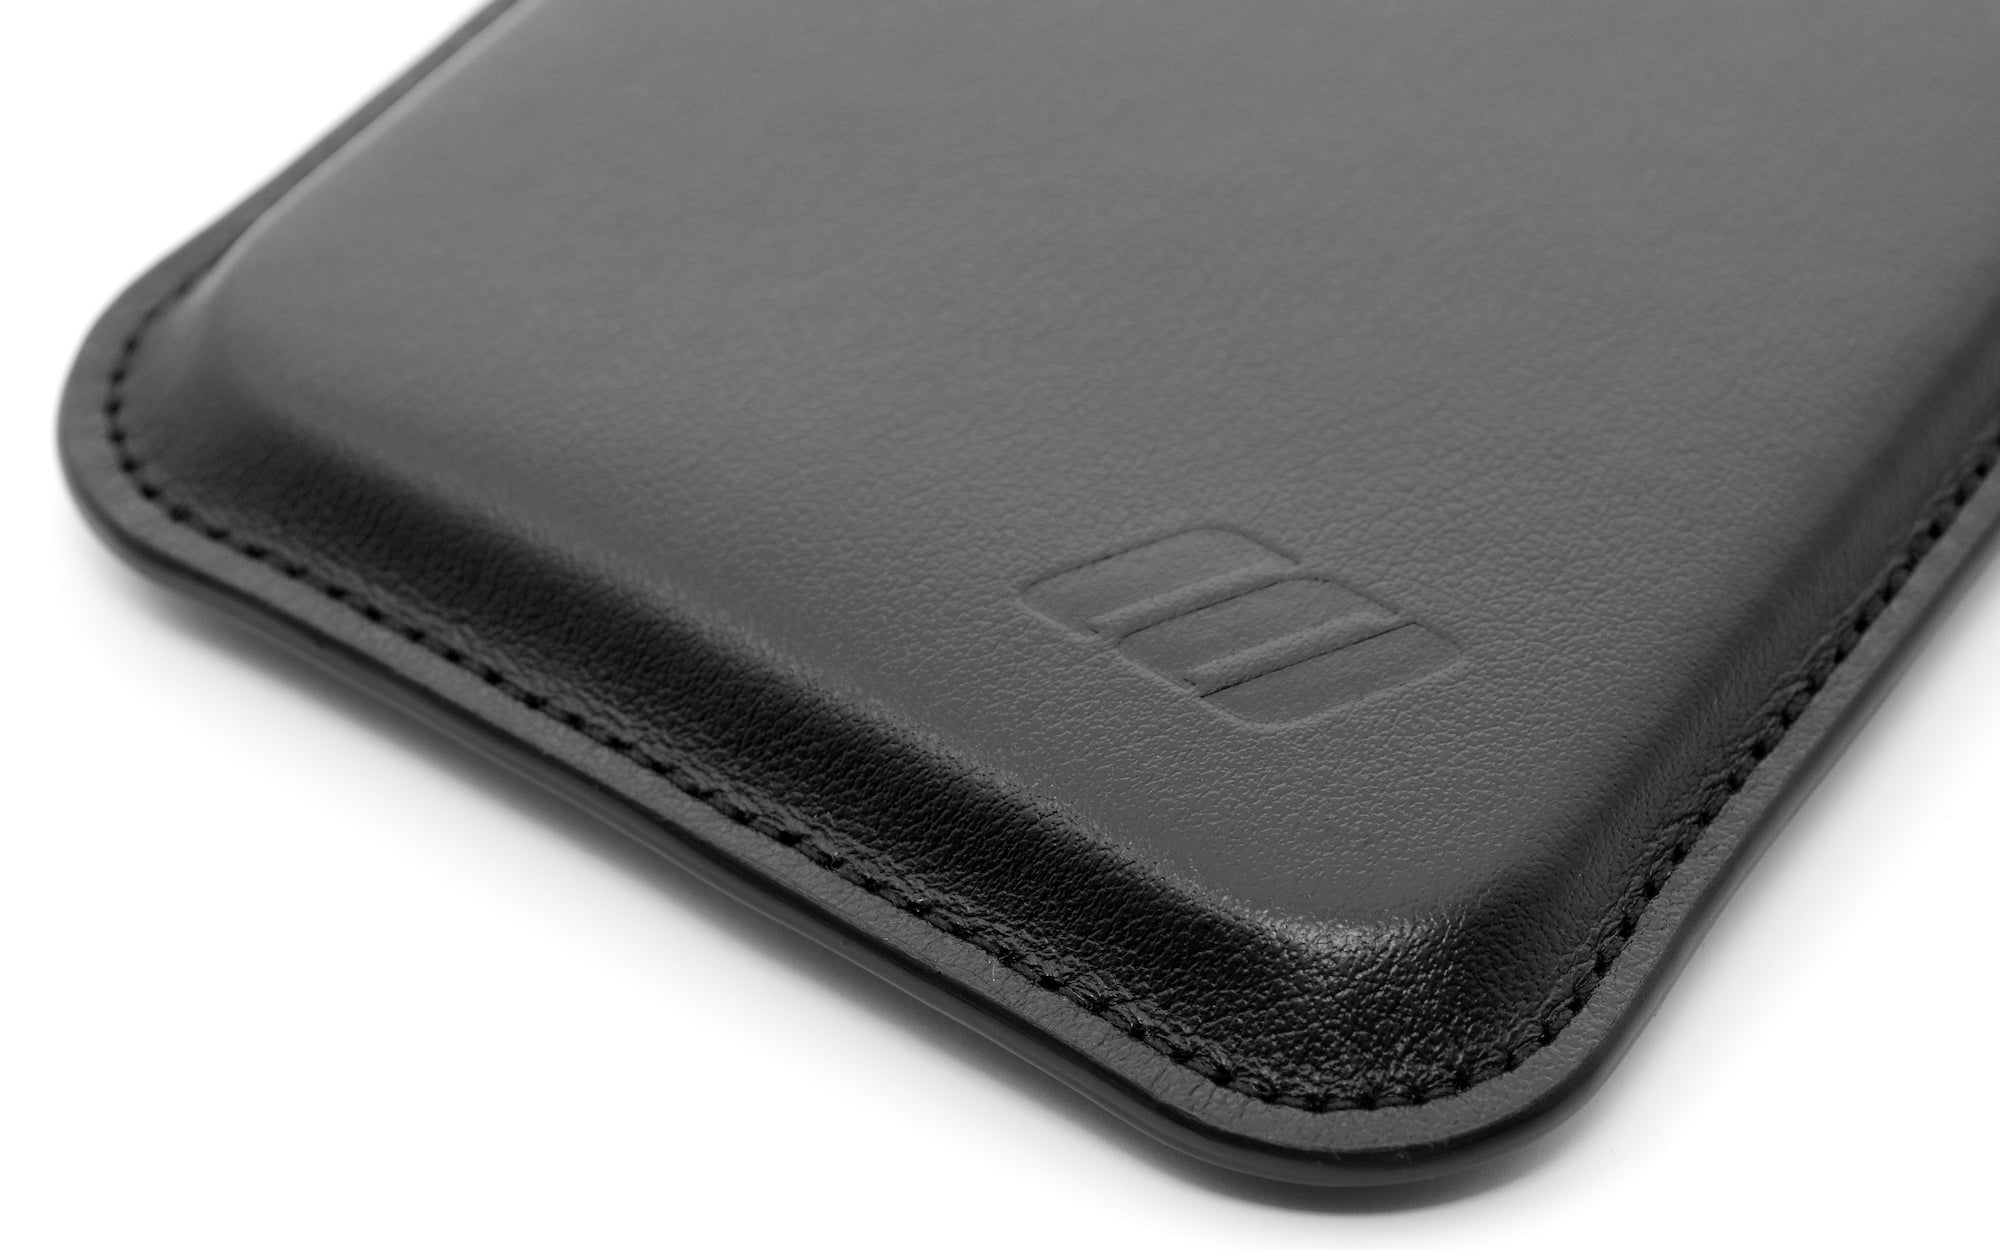 Apple iPhone 13 Mini Leather Sleeve Case - Skinny Fit - Black